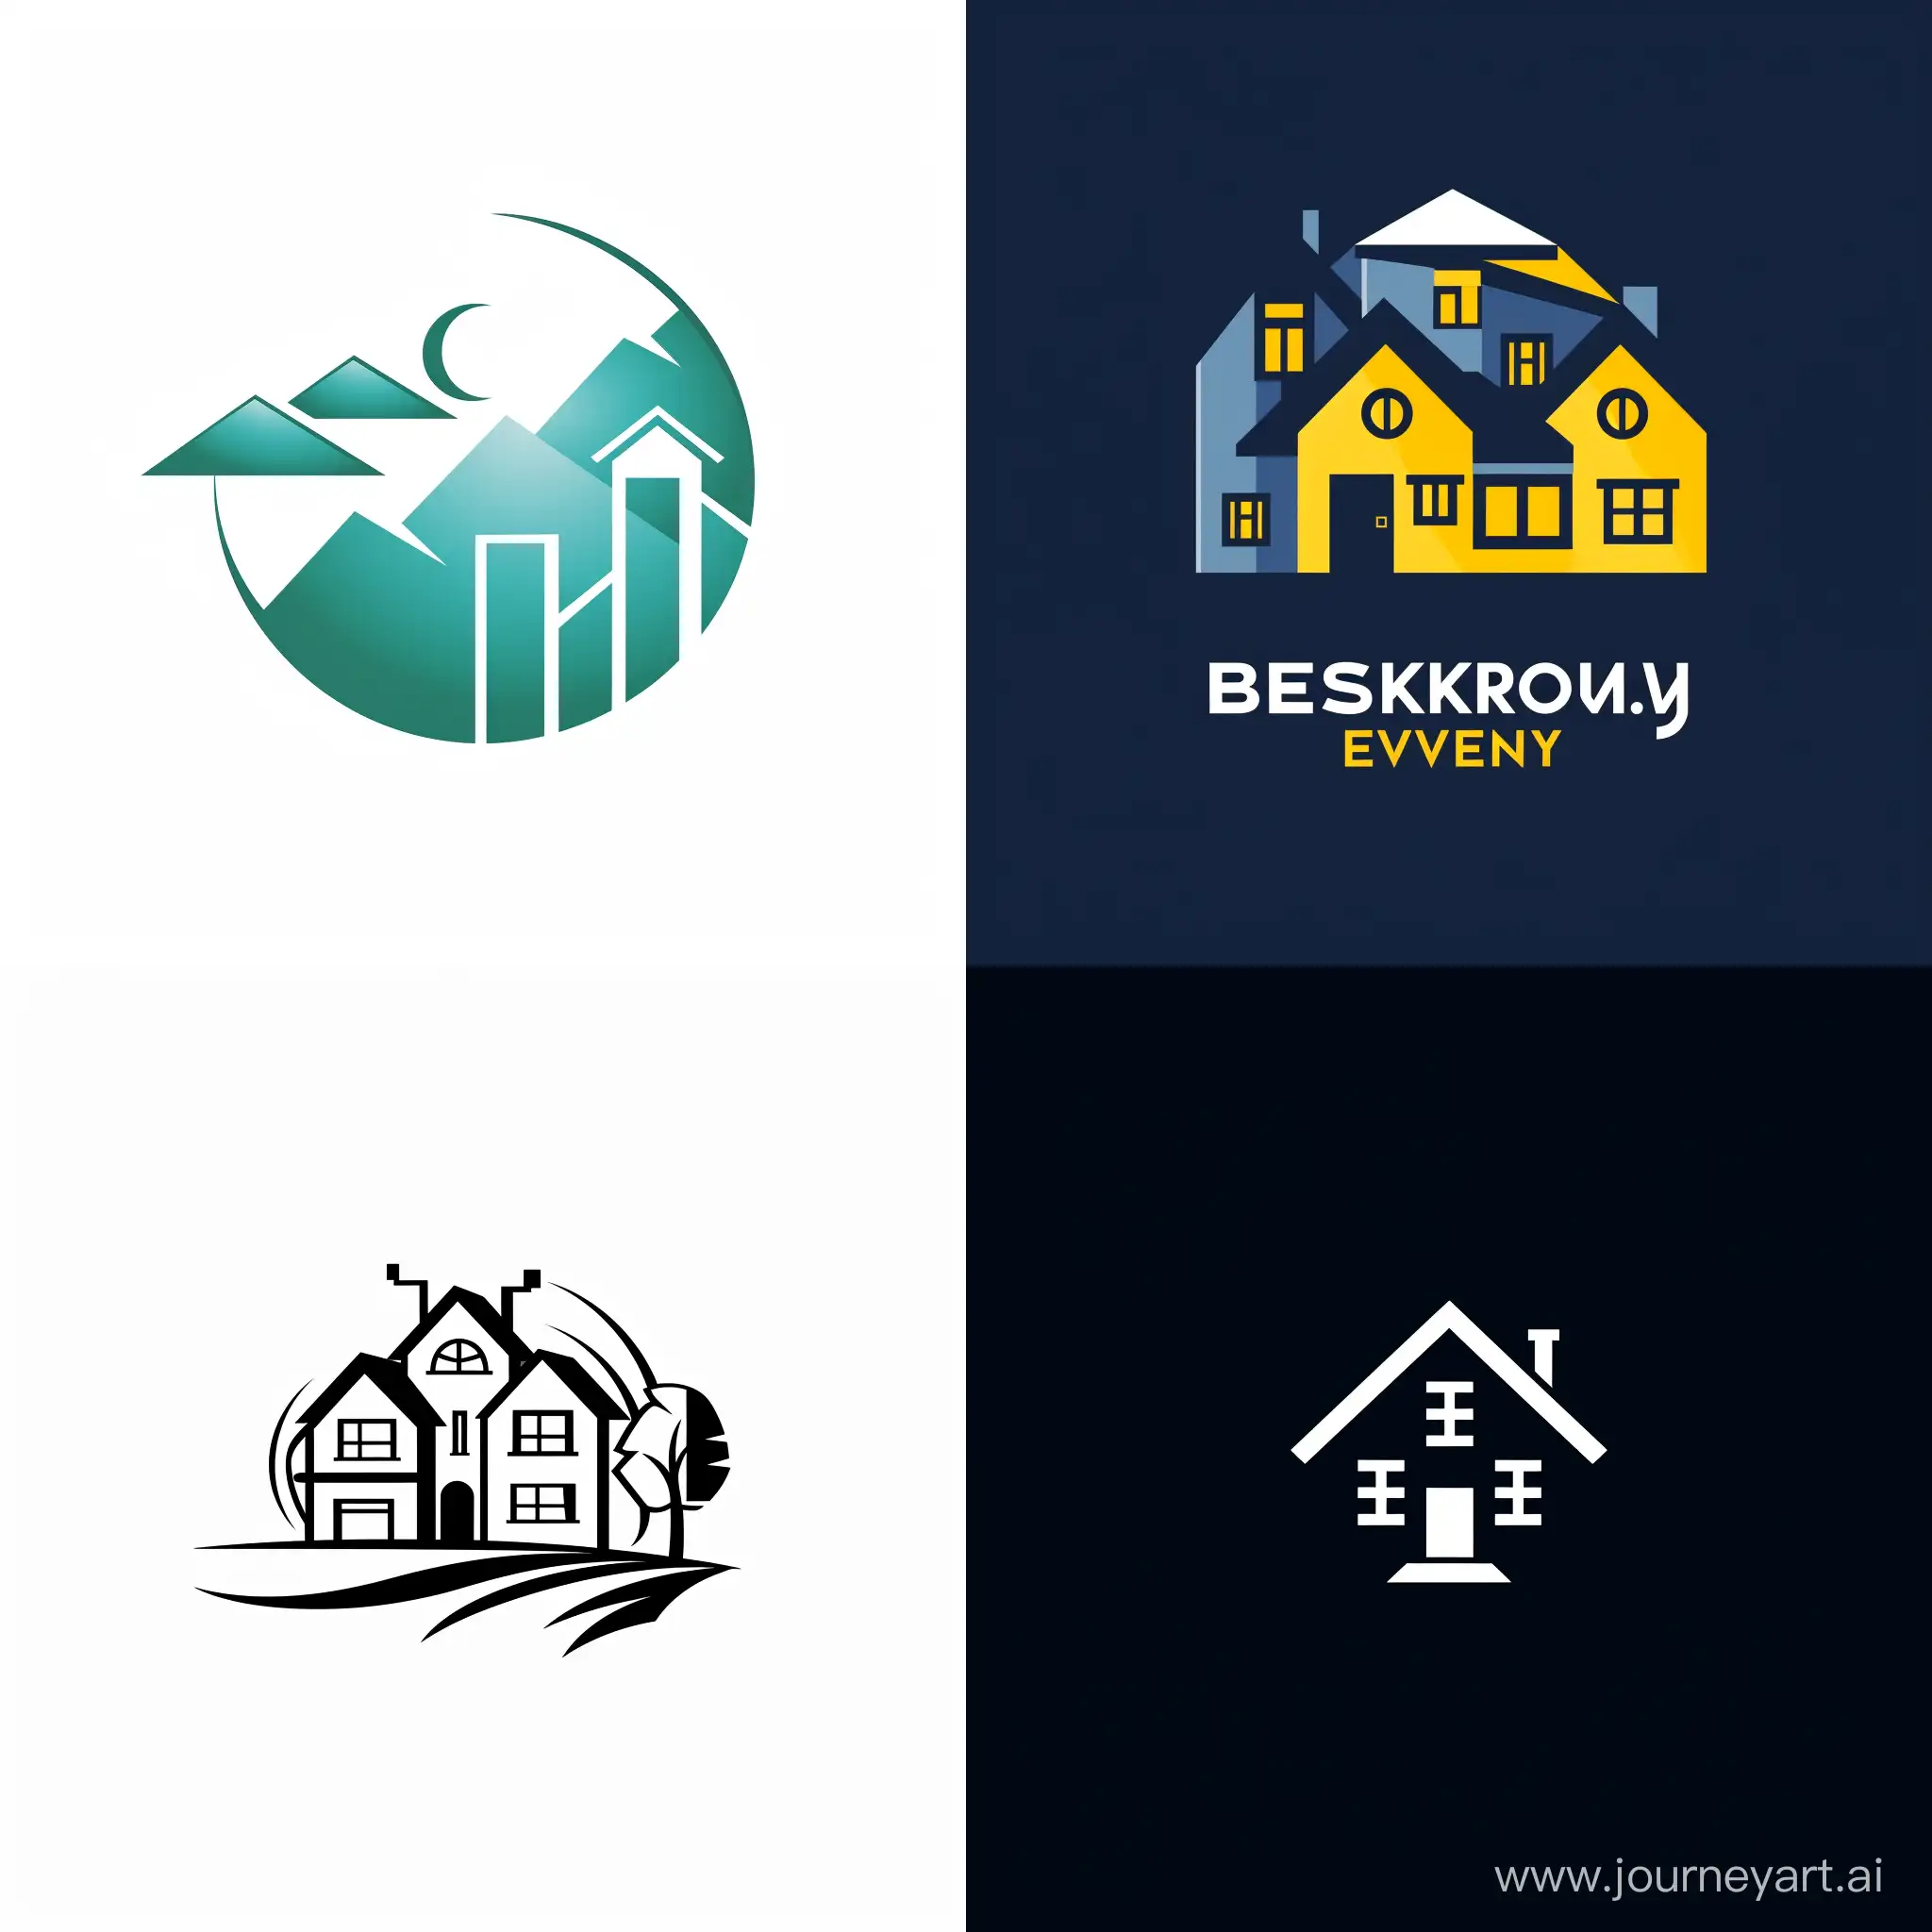 Привет, мне нужно создать логотип для личной компании в сфере недвижимости. Наименование компании: Beskrovniy Evgeniy. Я хочу, чтобы  наименование было в логотипе.
